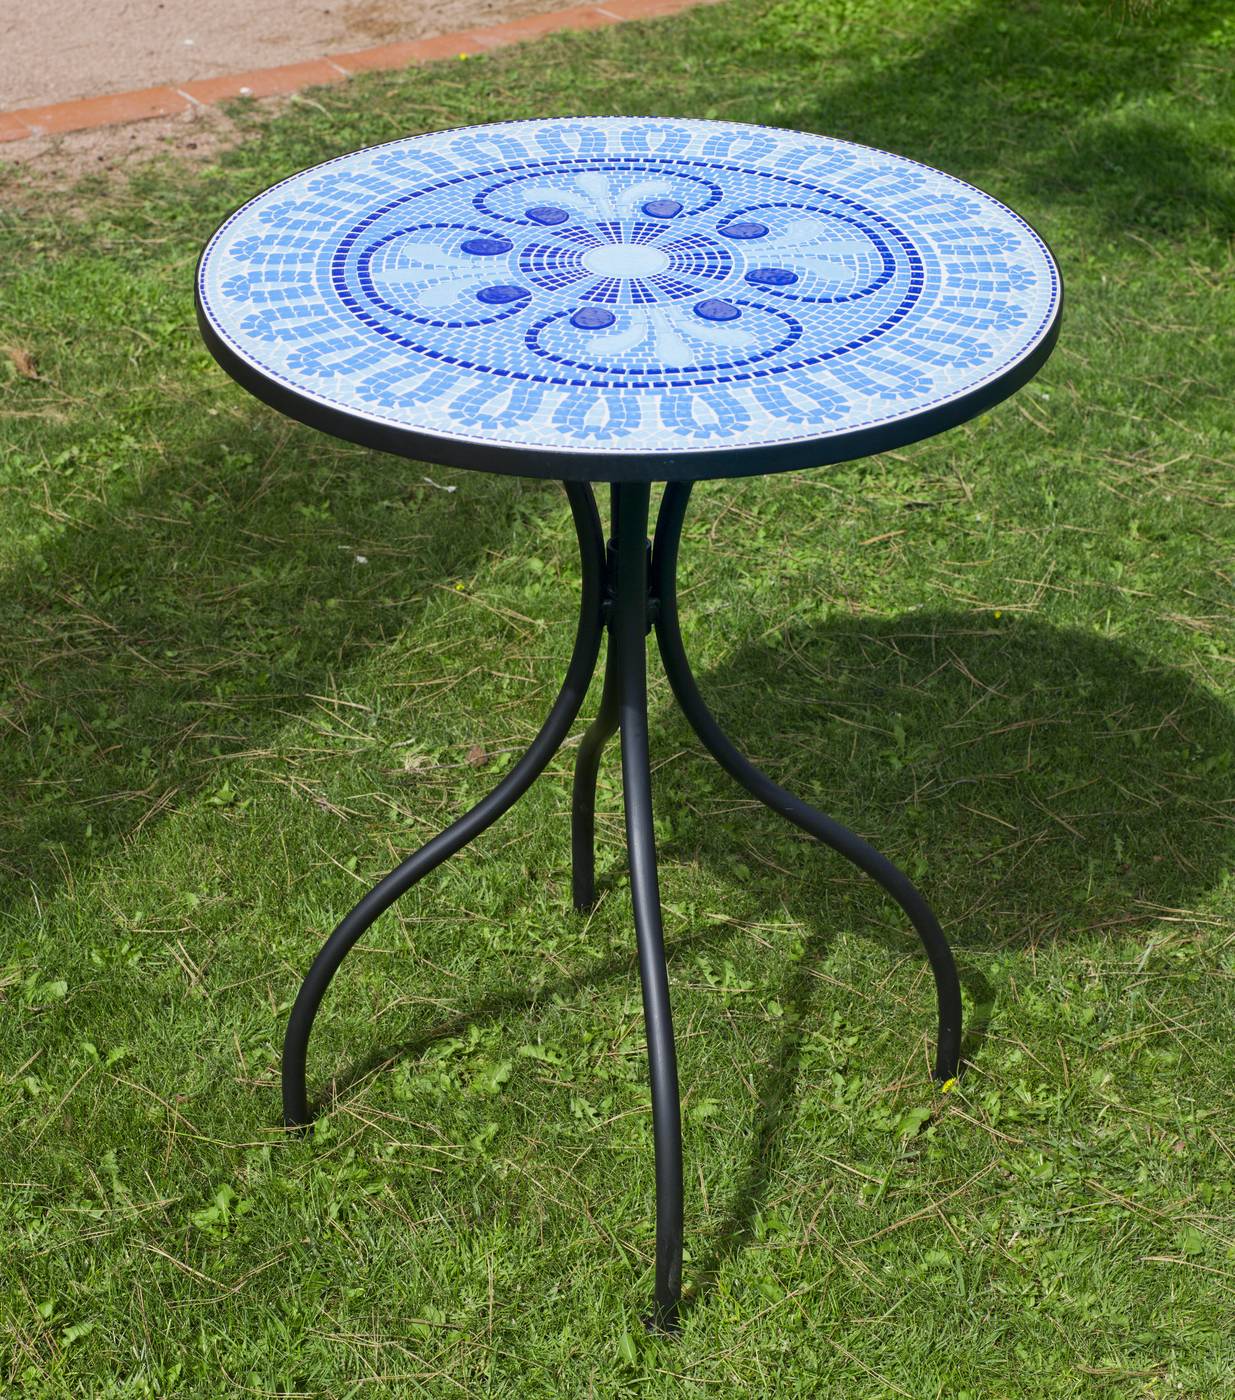 Set Mosaico Berna-Santana - Conjunto de acero color gris: mesa  redonda de acero forjado, con tablero mosaico de 60 cm. + 2 sillones apilables de wicker